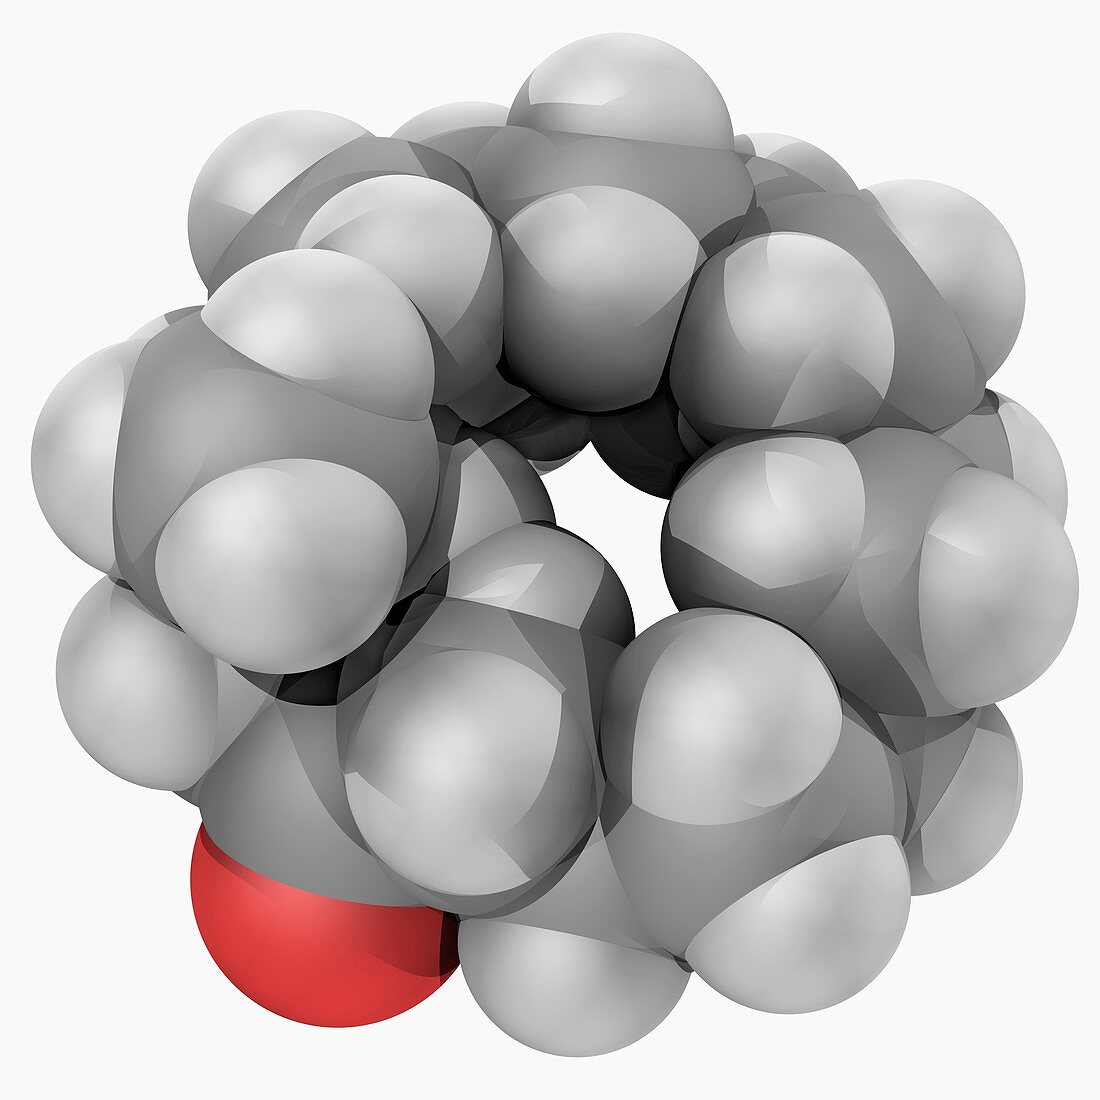 Muscone molecule